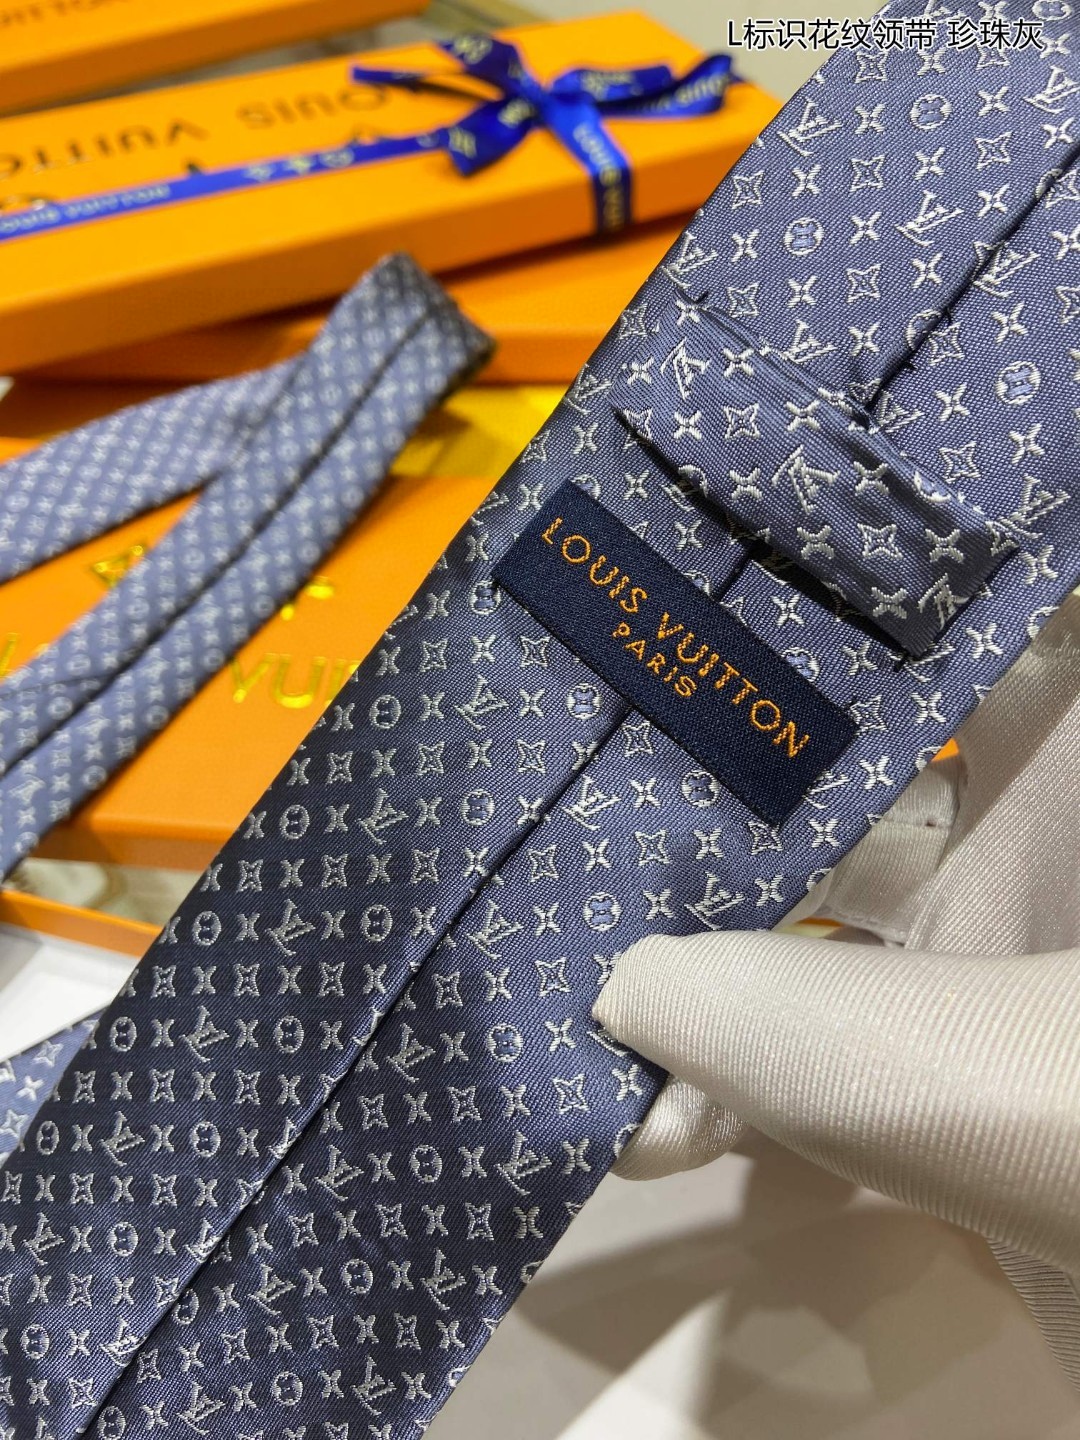 特价男士领带系列L标识花纹领带稀有MonogramClassic领带将经典路易威登风格与精细做工有机结合